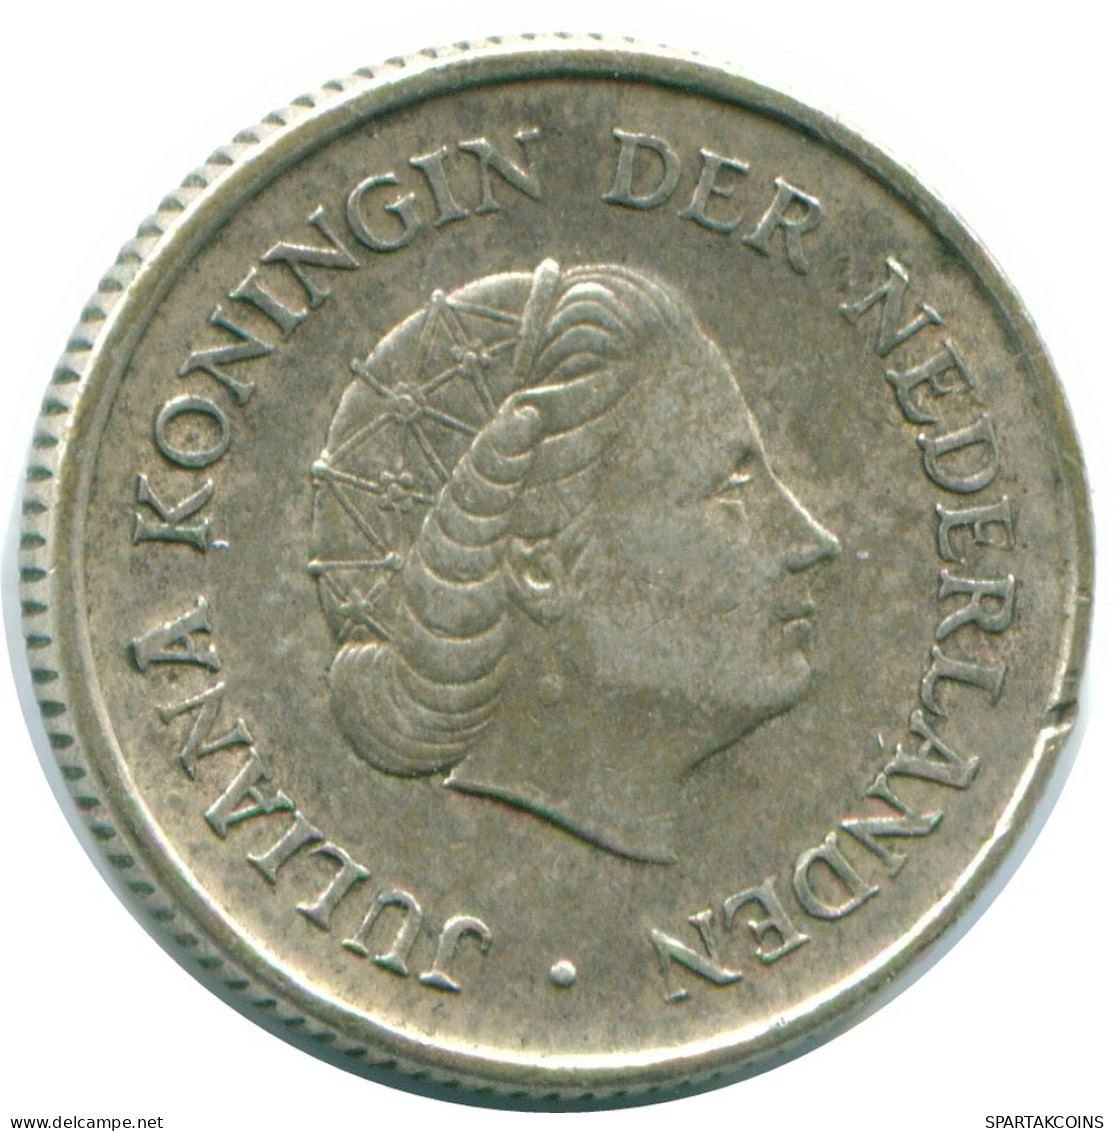 1/4 GULDEN 1965 NIEDERLÄNDISCHE ANTILLEN SILBER Koloniale Münze #NL11386.4.D.A - Nederlandse Antillen